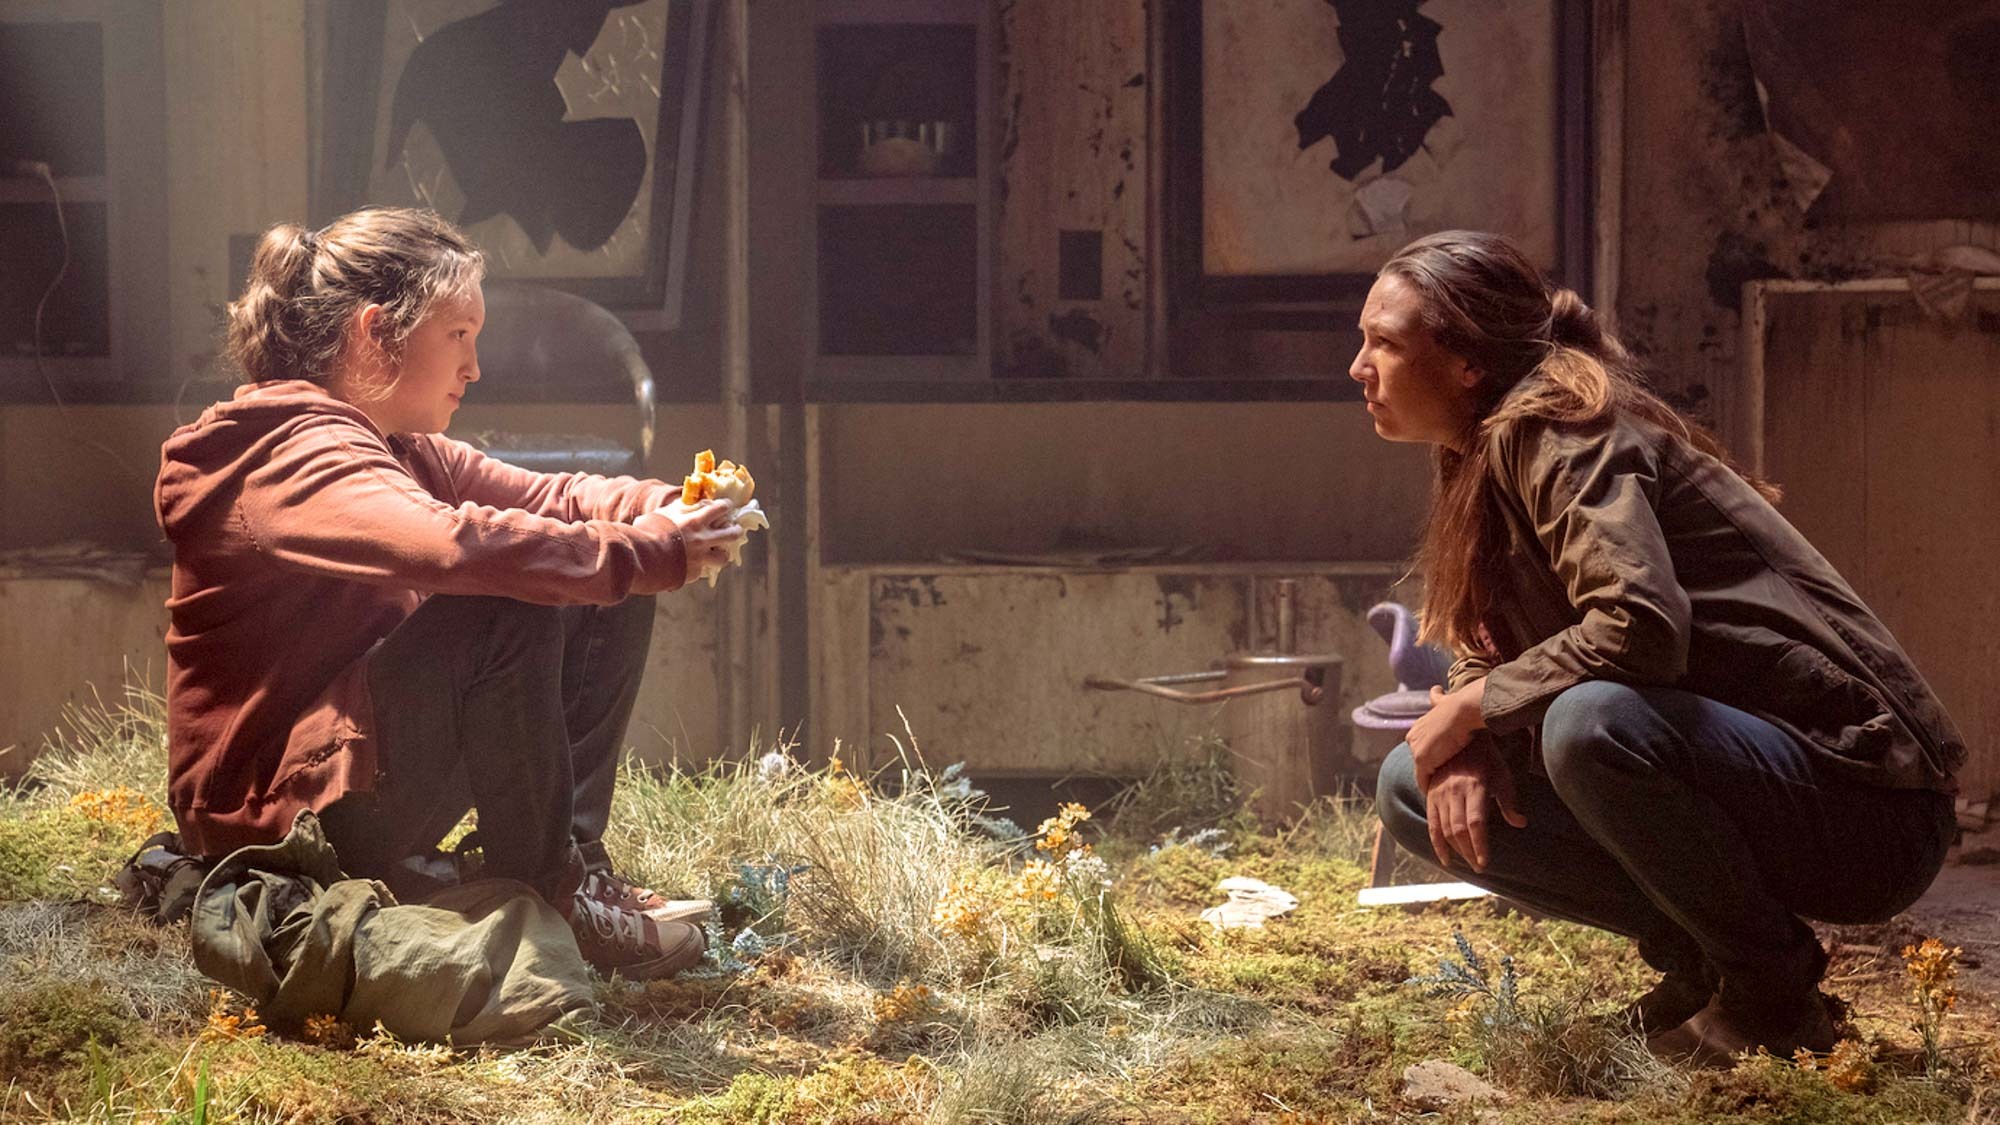 (من اليسار إلى اليمين) بيلا رامزي في دور إيلي وآنا تورف في دور تيس في فيلم The Last of Us على قناة HBO.